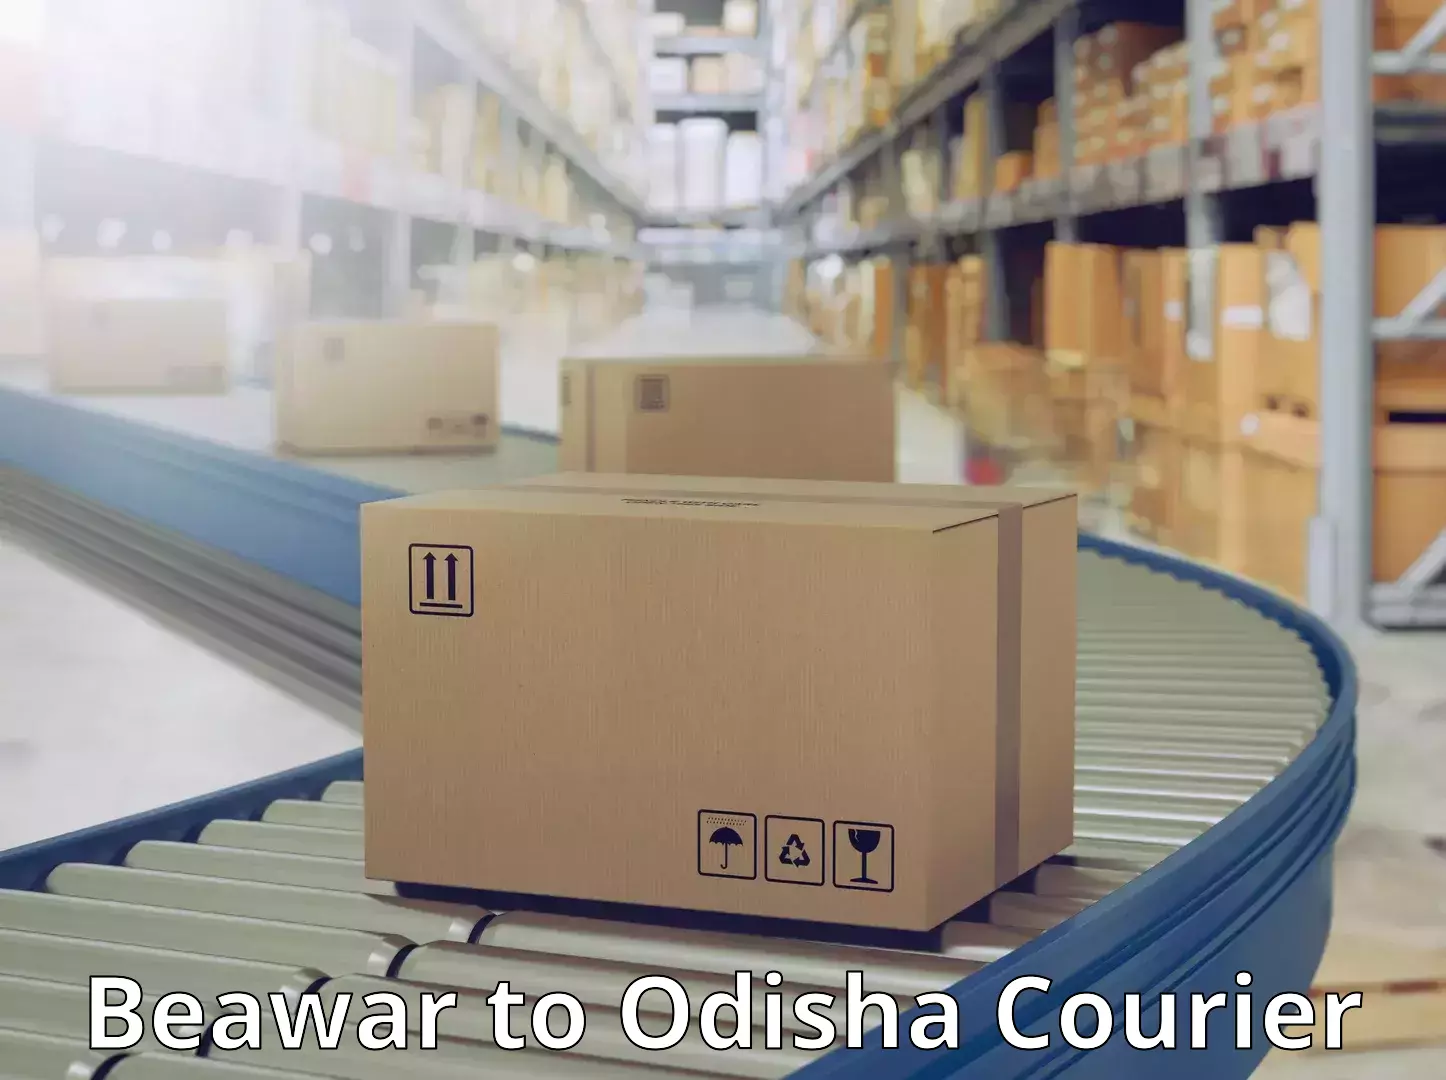 Customer-centric shipping Beawar to Saintala